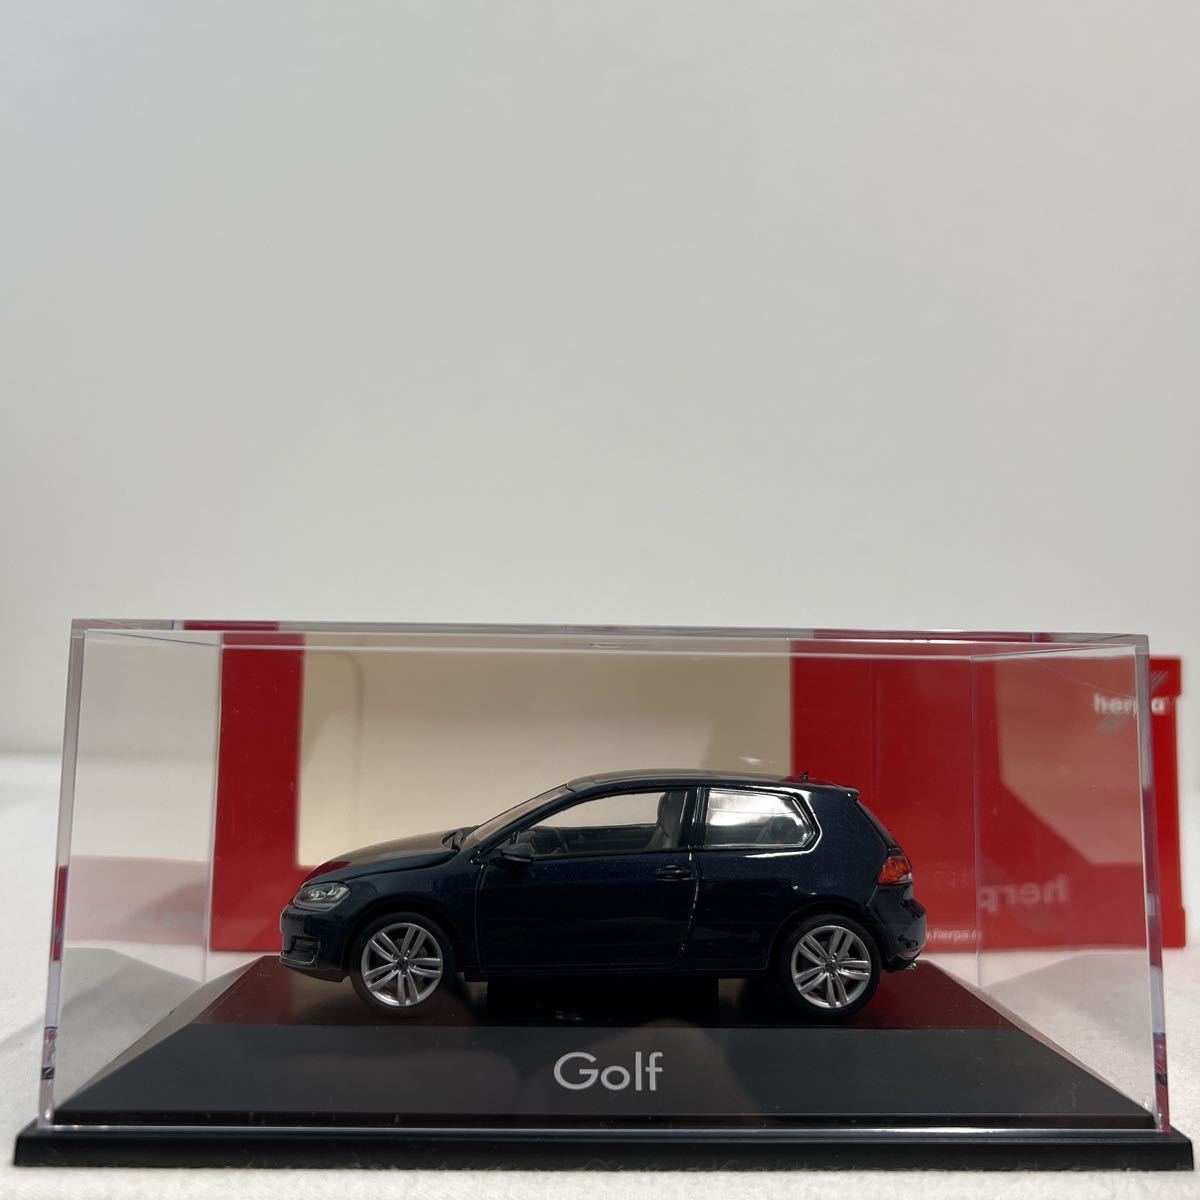 herpa 1/43 Volkswagen Golf ヘルパ フォルクスワーゲン ゴルフ Ⅶ 7 5G VW ミニカー モデルカー_画像6